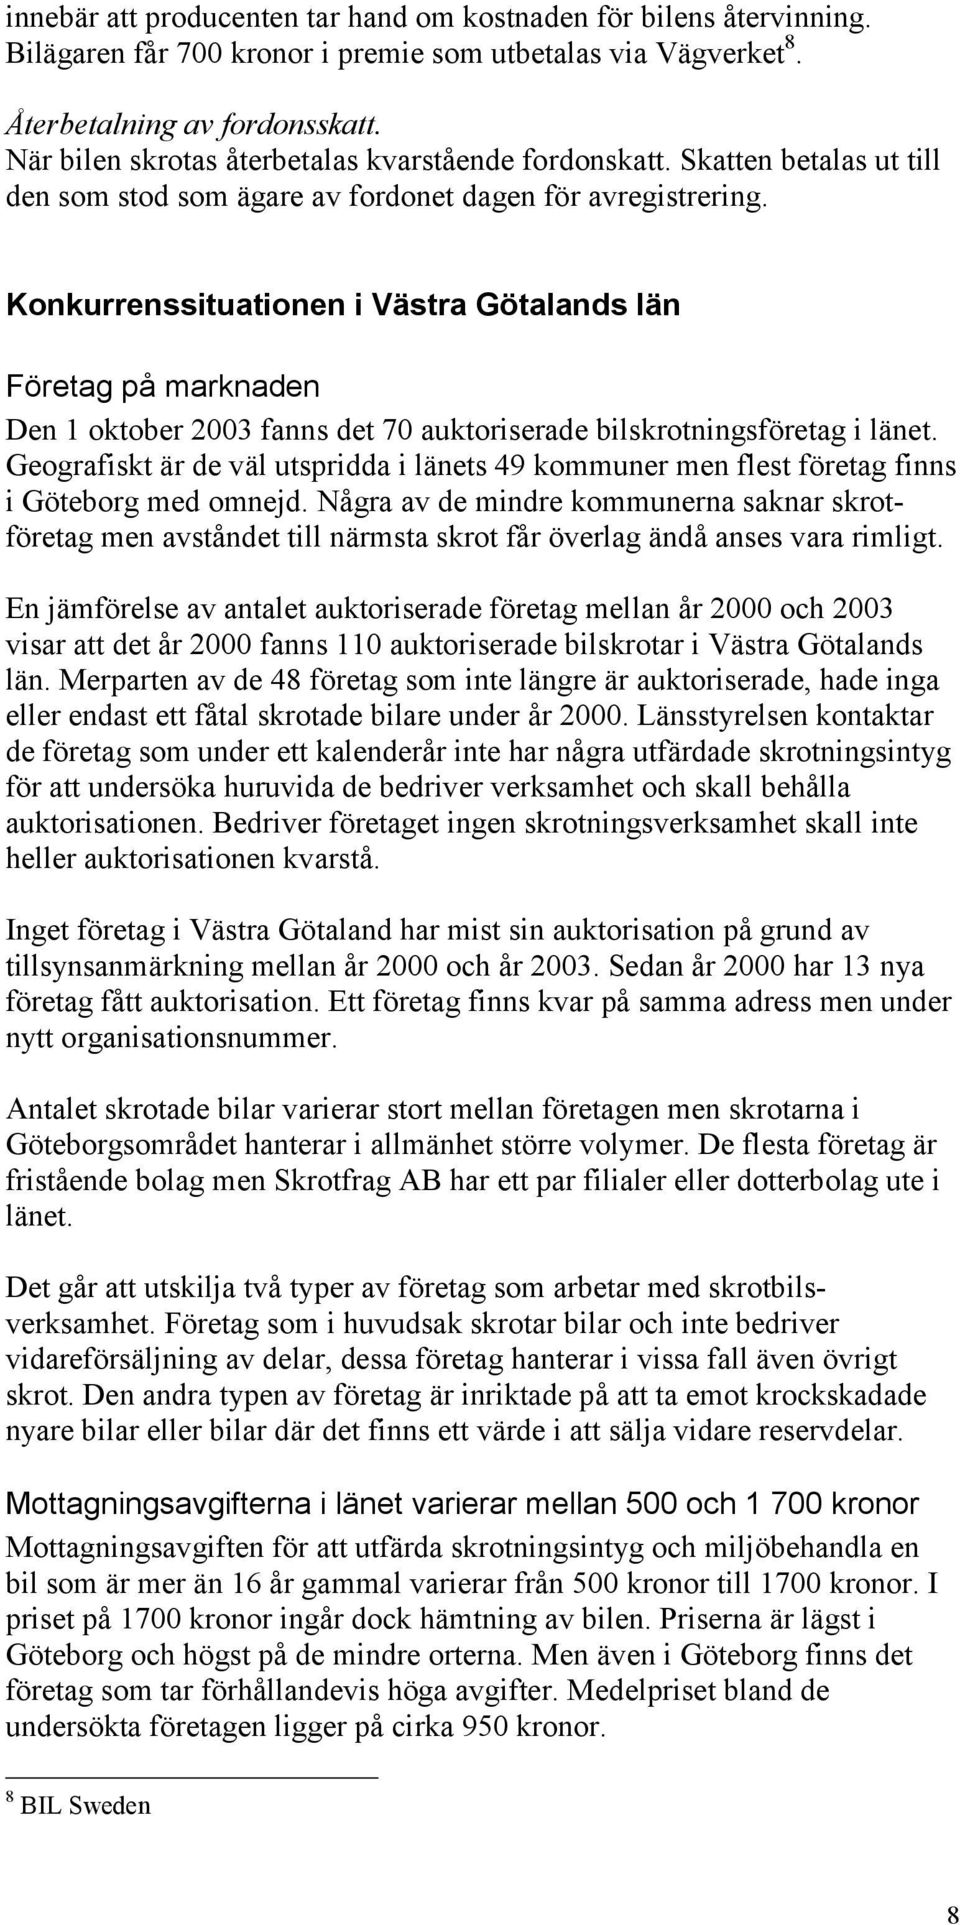 Konkurrenssituationen i Västra Götalands län Företag på marknaden Den 1 oktober 2003 fanns det 70 auktoriserade bilskrotningsföretag i länet.